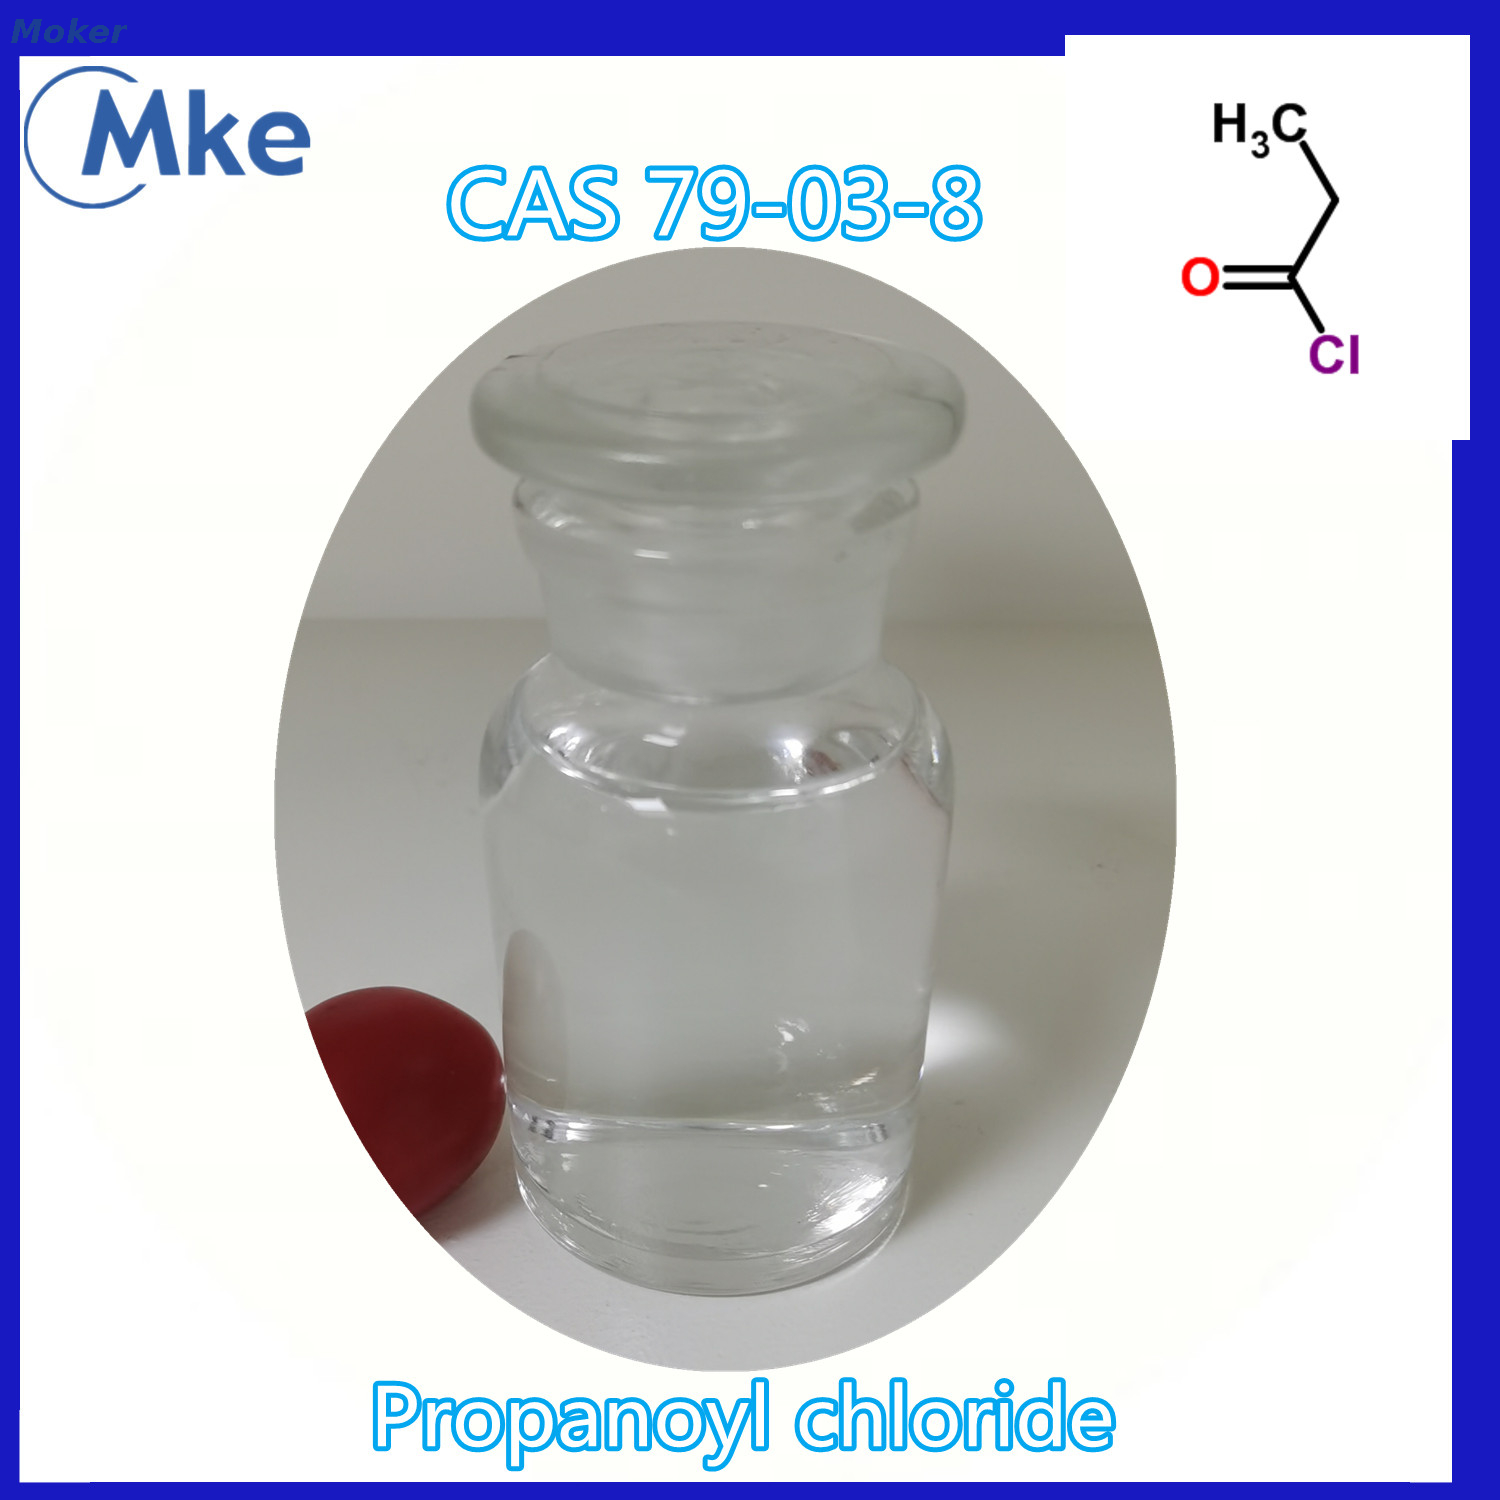  Pharmaceutical Grade PRO Pionyl Chloride 99% CAS 79-03-8 Liquid